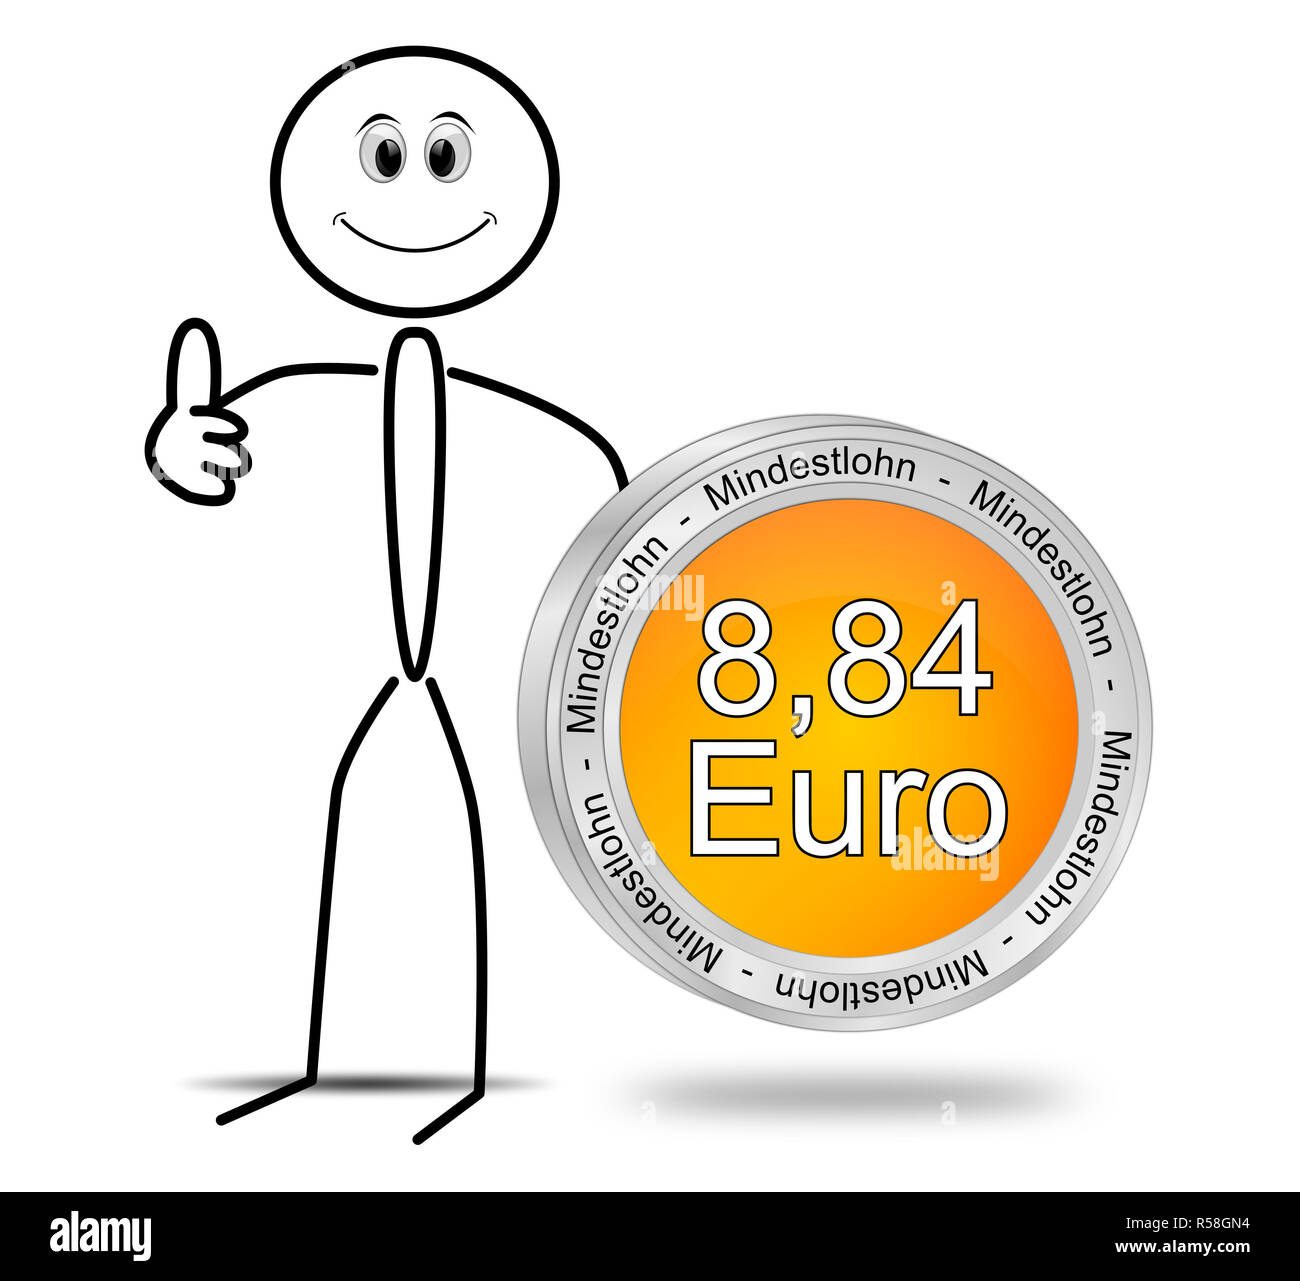 Stickman avec 8,84 euros salaire minimum - en allemand - 3D illustration Banque D'Images